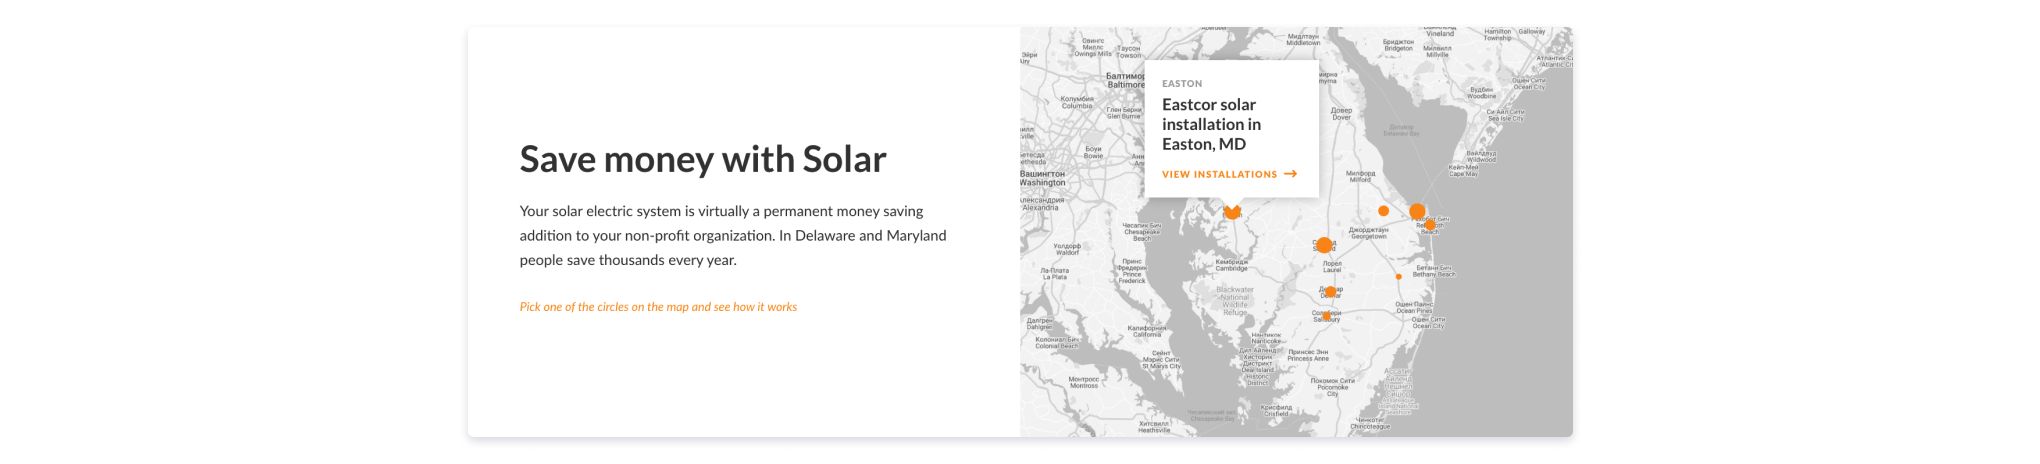 интерактивная карта на сайте Green Street Solar